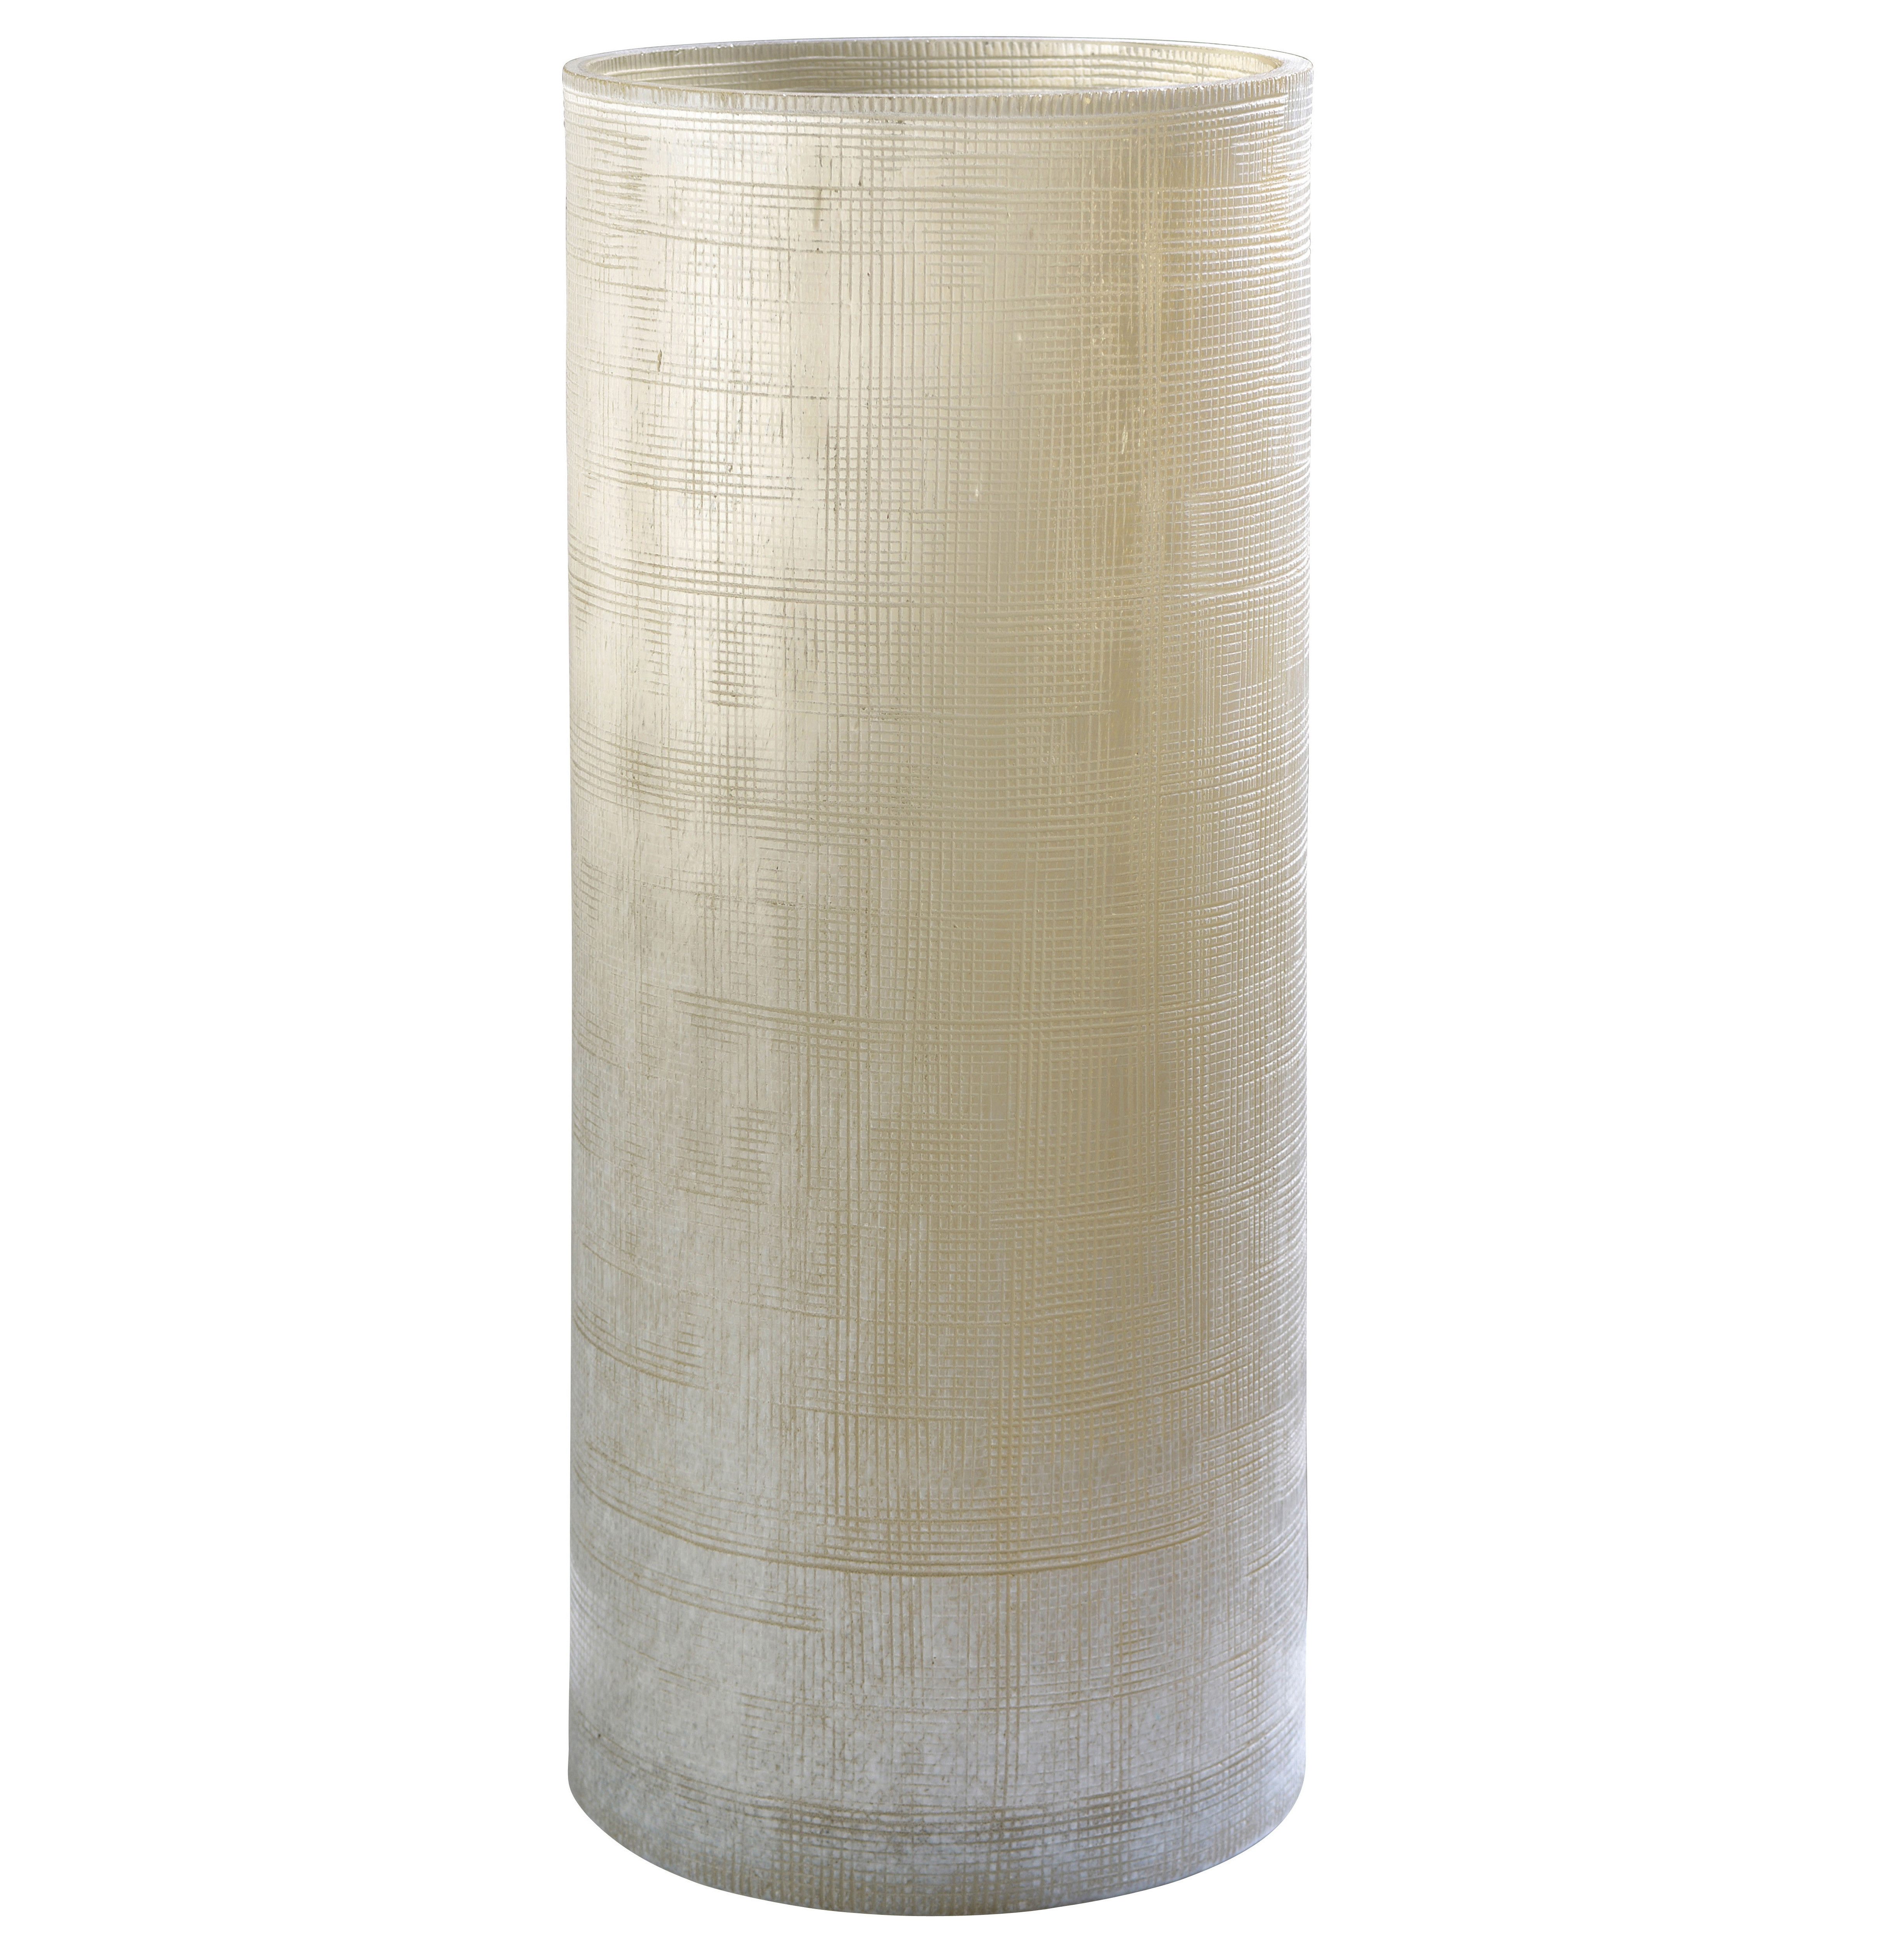 SOMPEX Tischvase Ashley beige sand groß, aus Glas, besondere Oberflächenstruktur